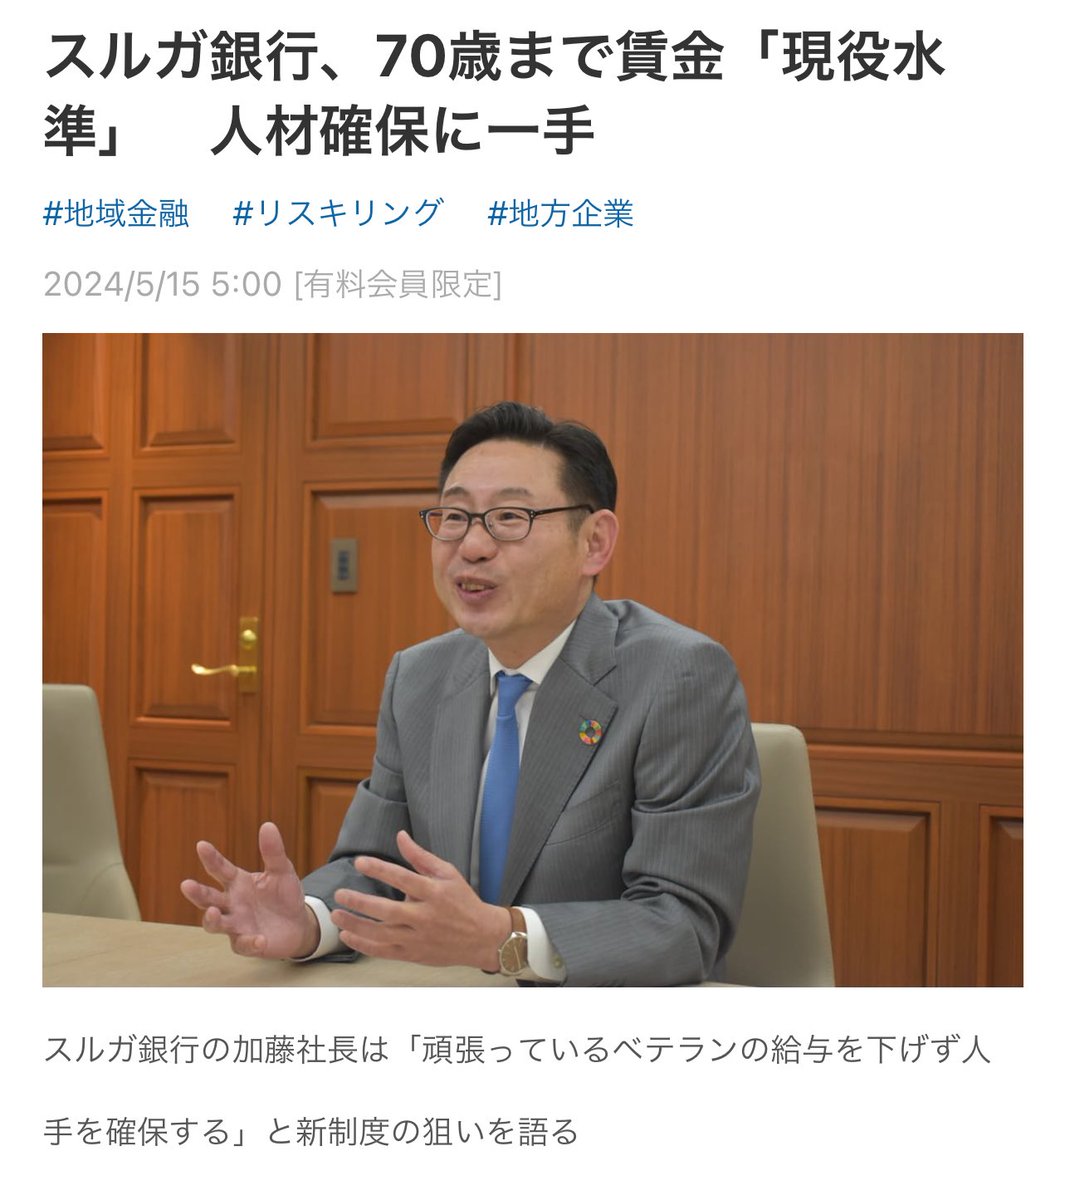 スルガは1300名くらい従業員いるのに、ここ3年くらい、毎年10人程度しか新卒採用出来てない（していない）んよな。そらおじさんたちに70歳まで現役レベルで働いてもらわないと、現場回らないよな😂

スルガ銀行、70歳まで賃金「現役水準」　人材確保に一手：日本経済新聞
nikkei.com/article/DGXZQO…